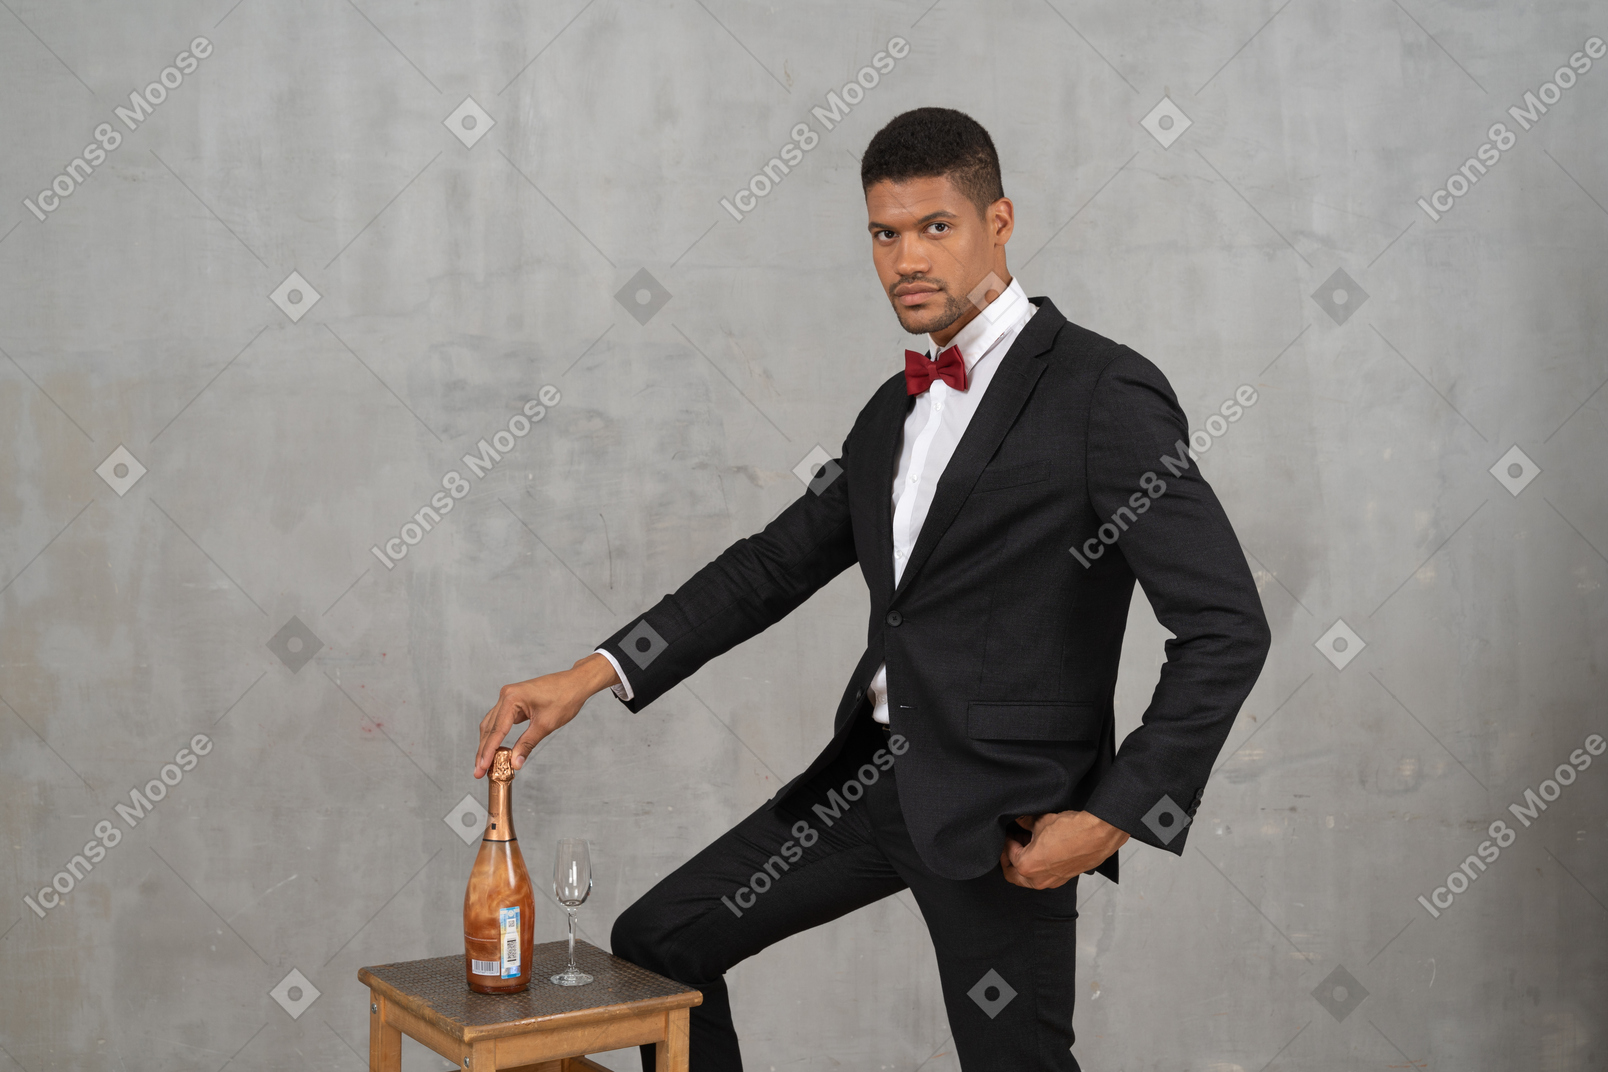 Mann, der mit der hand auf einer champagnerflasche steht